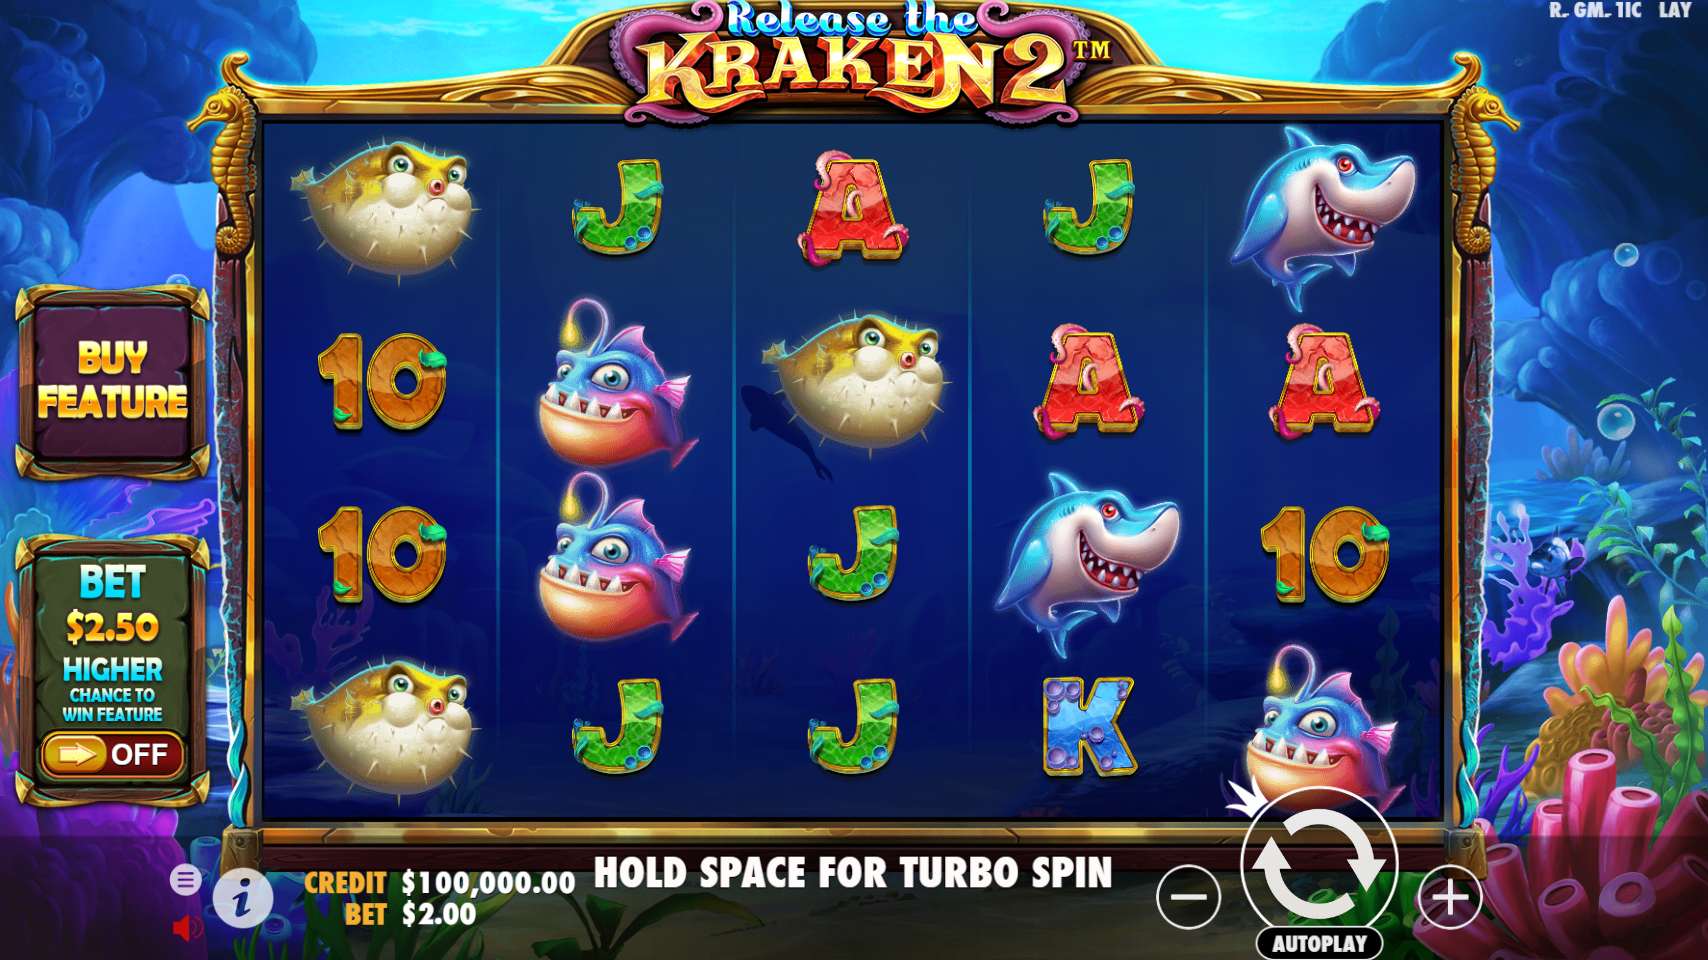 Release the Kraken 2 Base Game